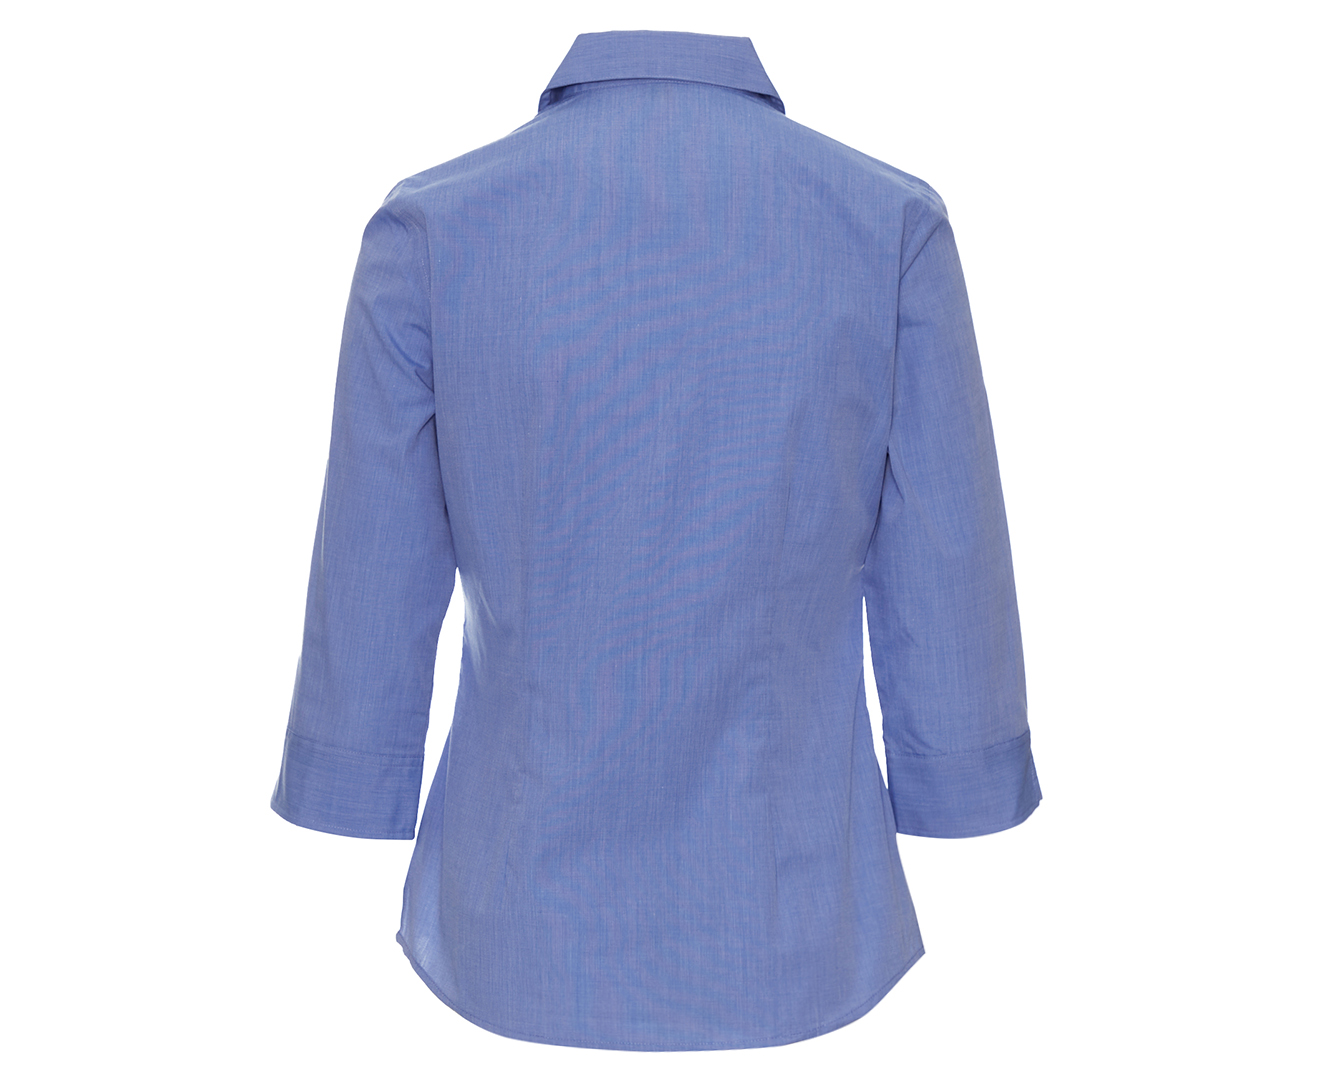 Stylecorp Women's 3/4 Sleeve Shirt - Light Blue | Catch.com.au